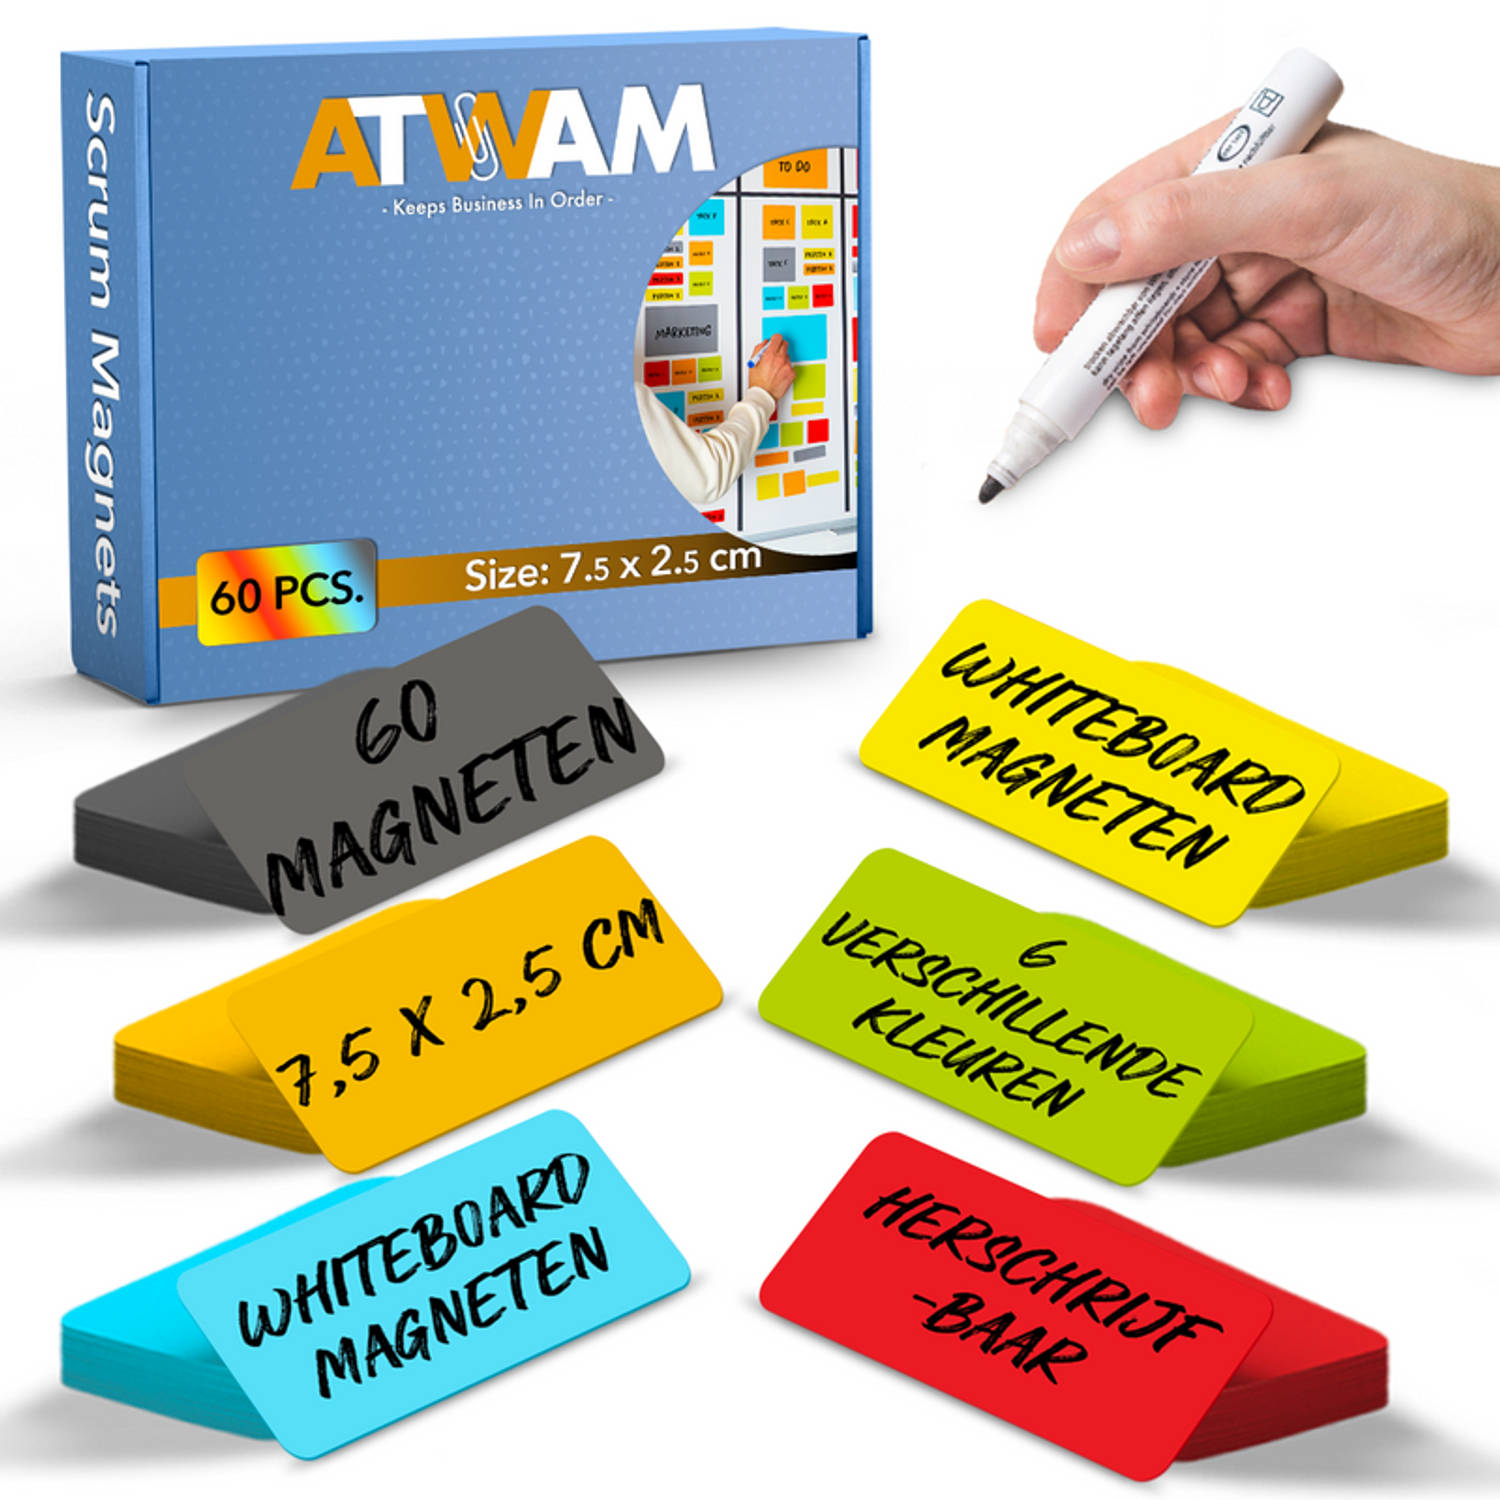 ATWAM Scrum Magneten - 60 stuks - Voor Whiteboard of Magneetbord - Herschrijfbare Magneten - Post It - 7,5*2,5 cm